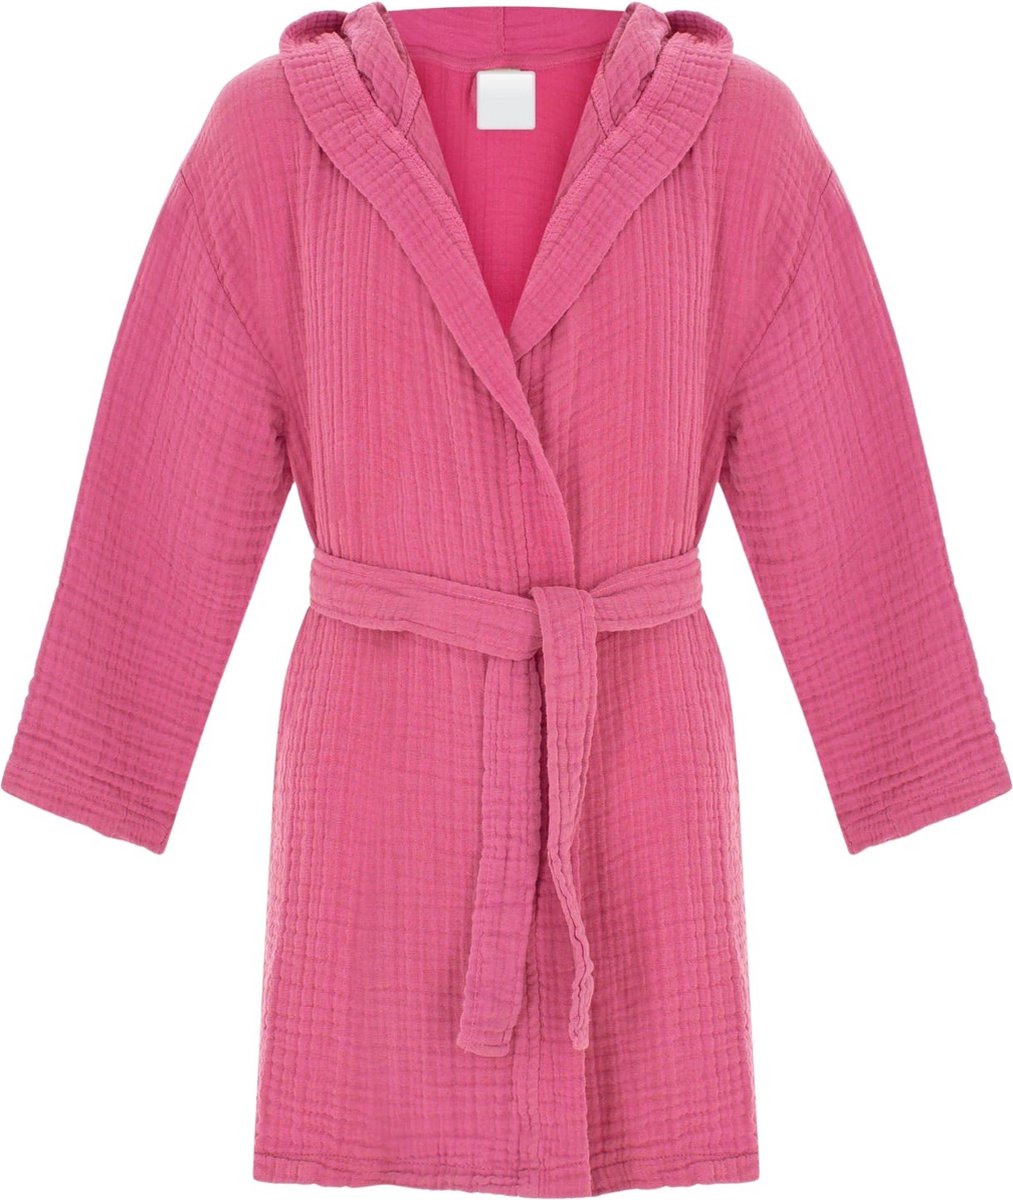 Badjas kind met capuchon | Mousseline 100% katoen | kinderbadjas voor jongens en meisjes | Douche & Zwembad & Strand | roze 0-1 jaar